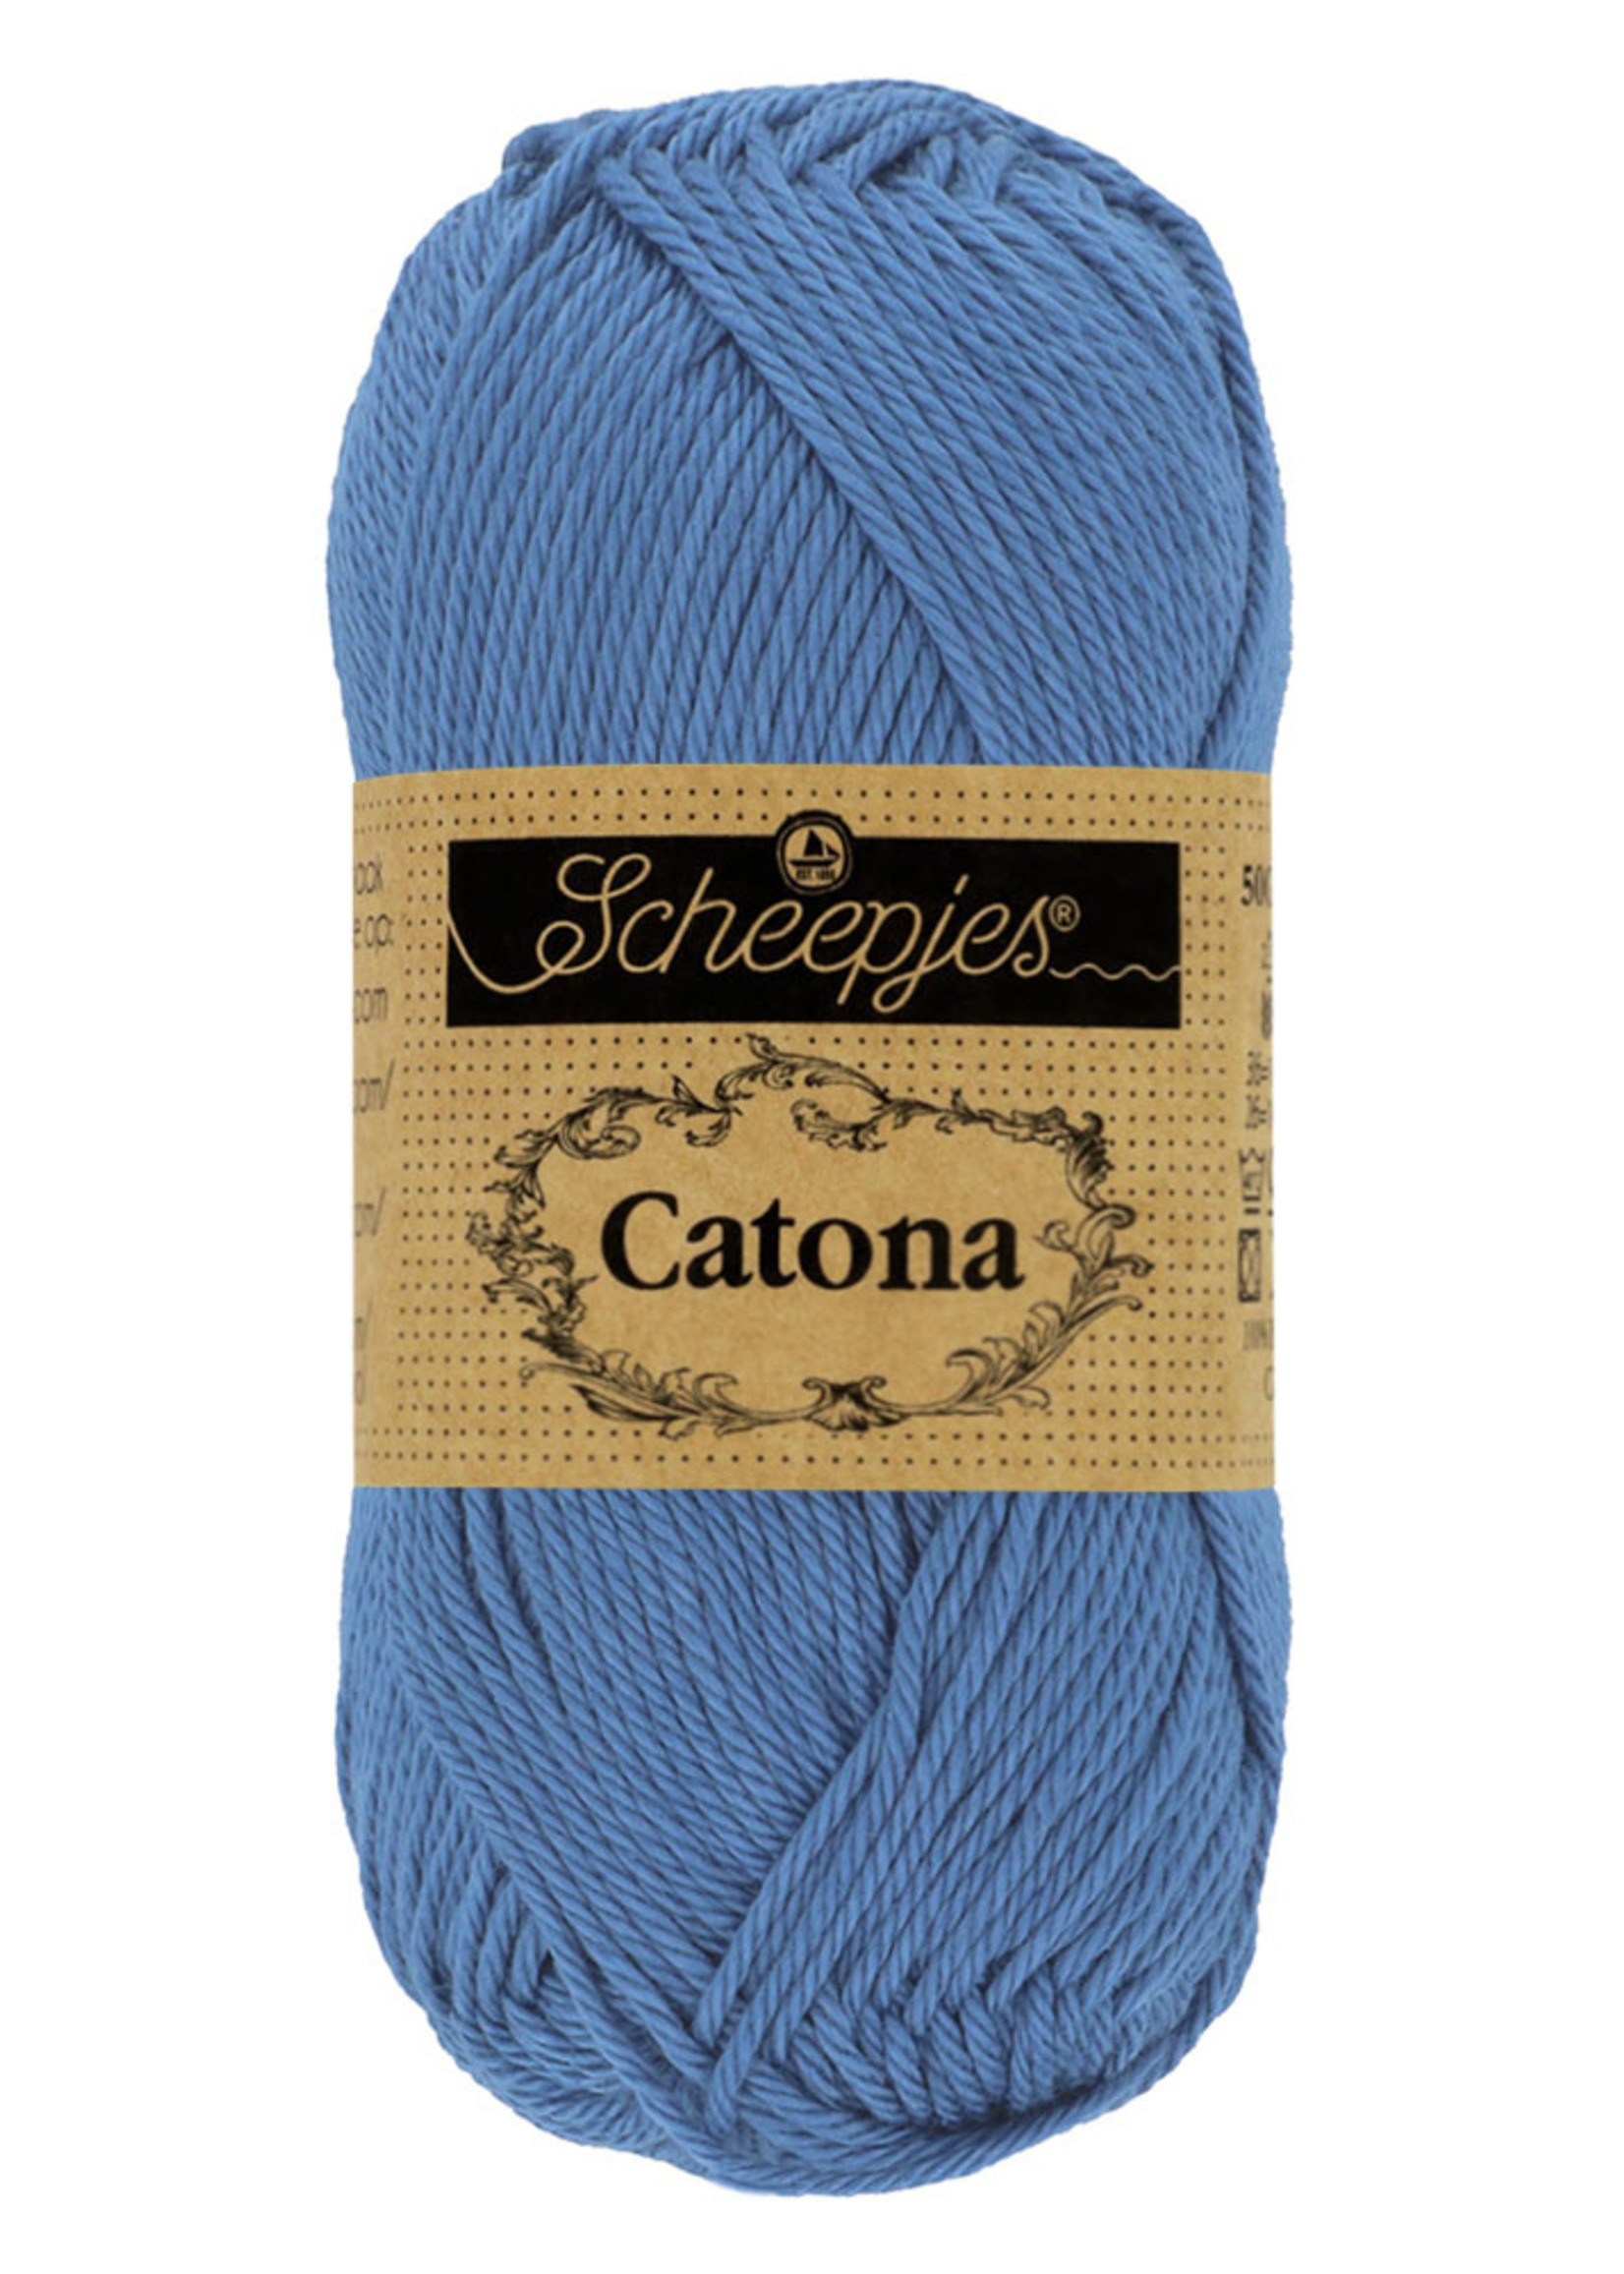 Scheepjes Catona - 261 CAPRI BLUE